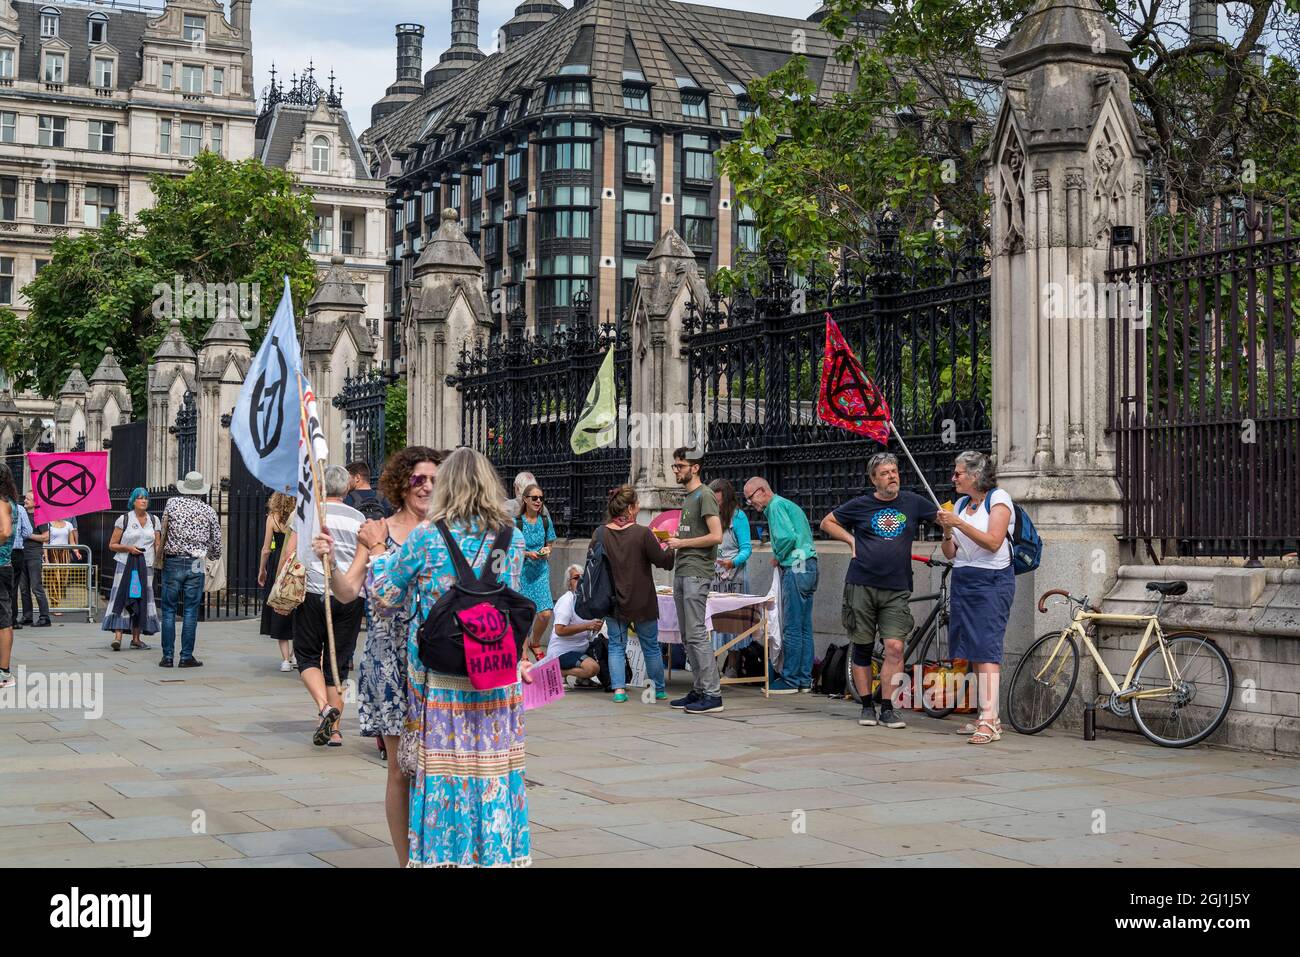 Extinction les militants de la rébellion devant les chambres du Parlement, Parliament Square, Londres, Angleterre, Royaume-Uni Banque D'Images